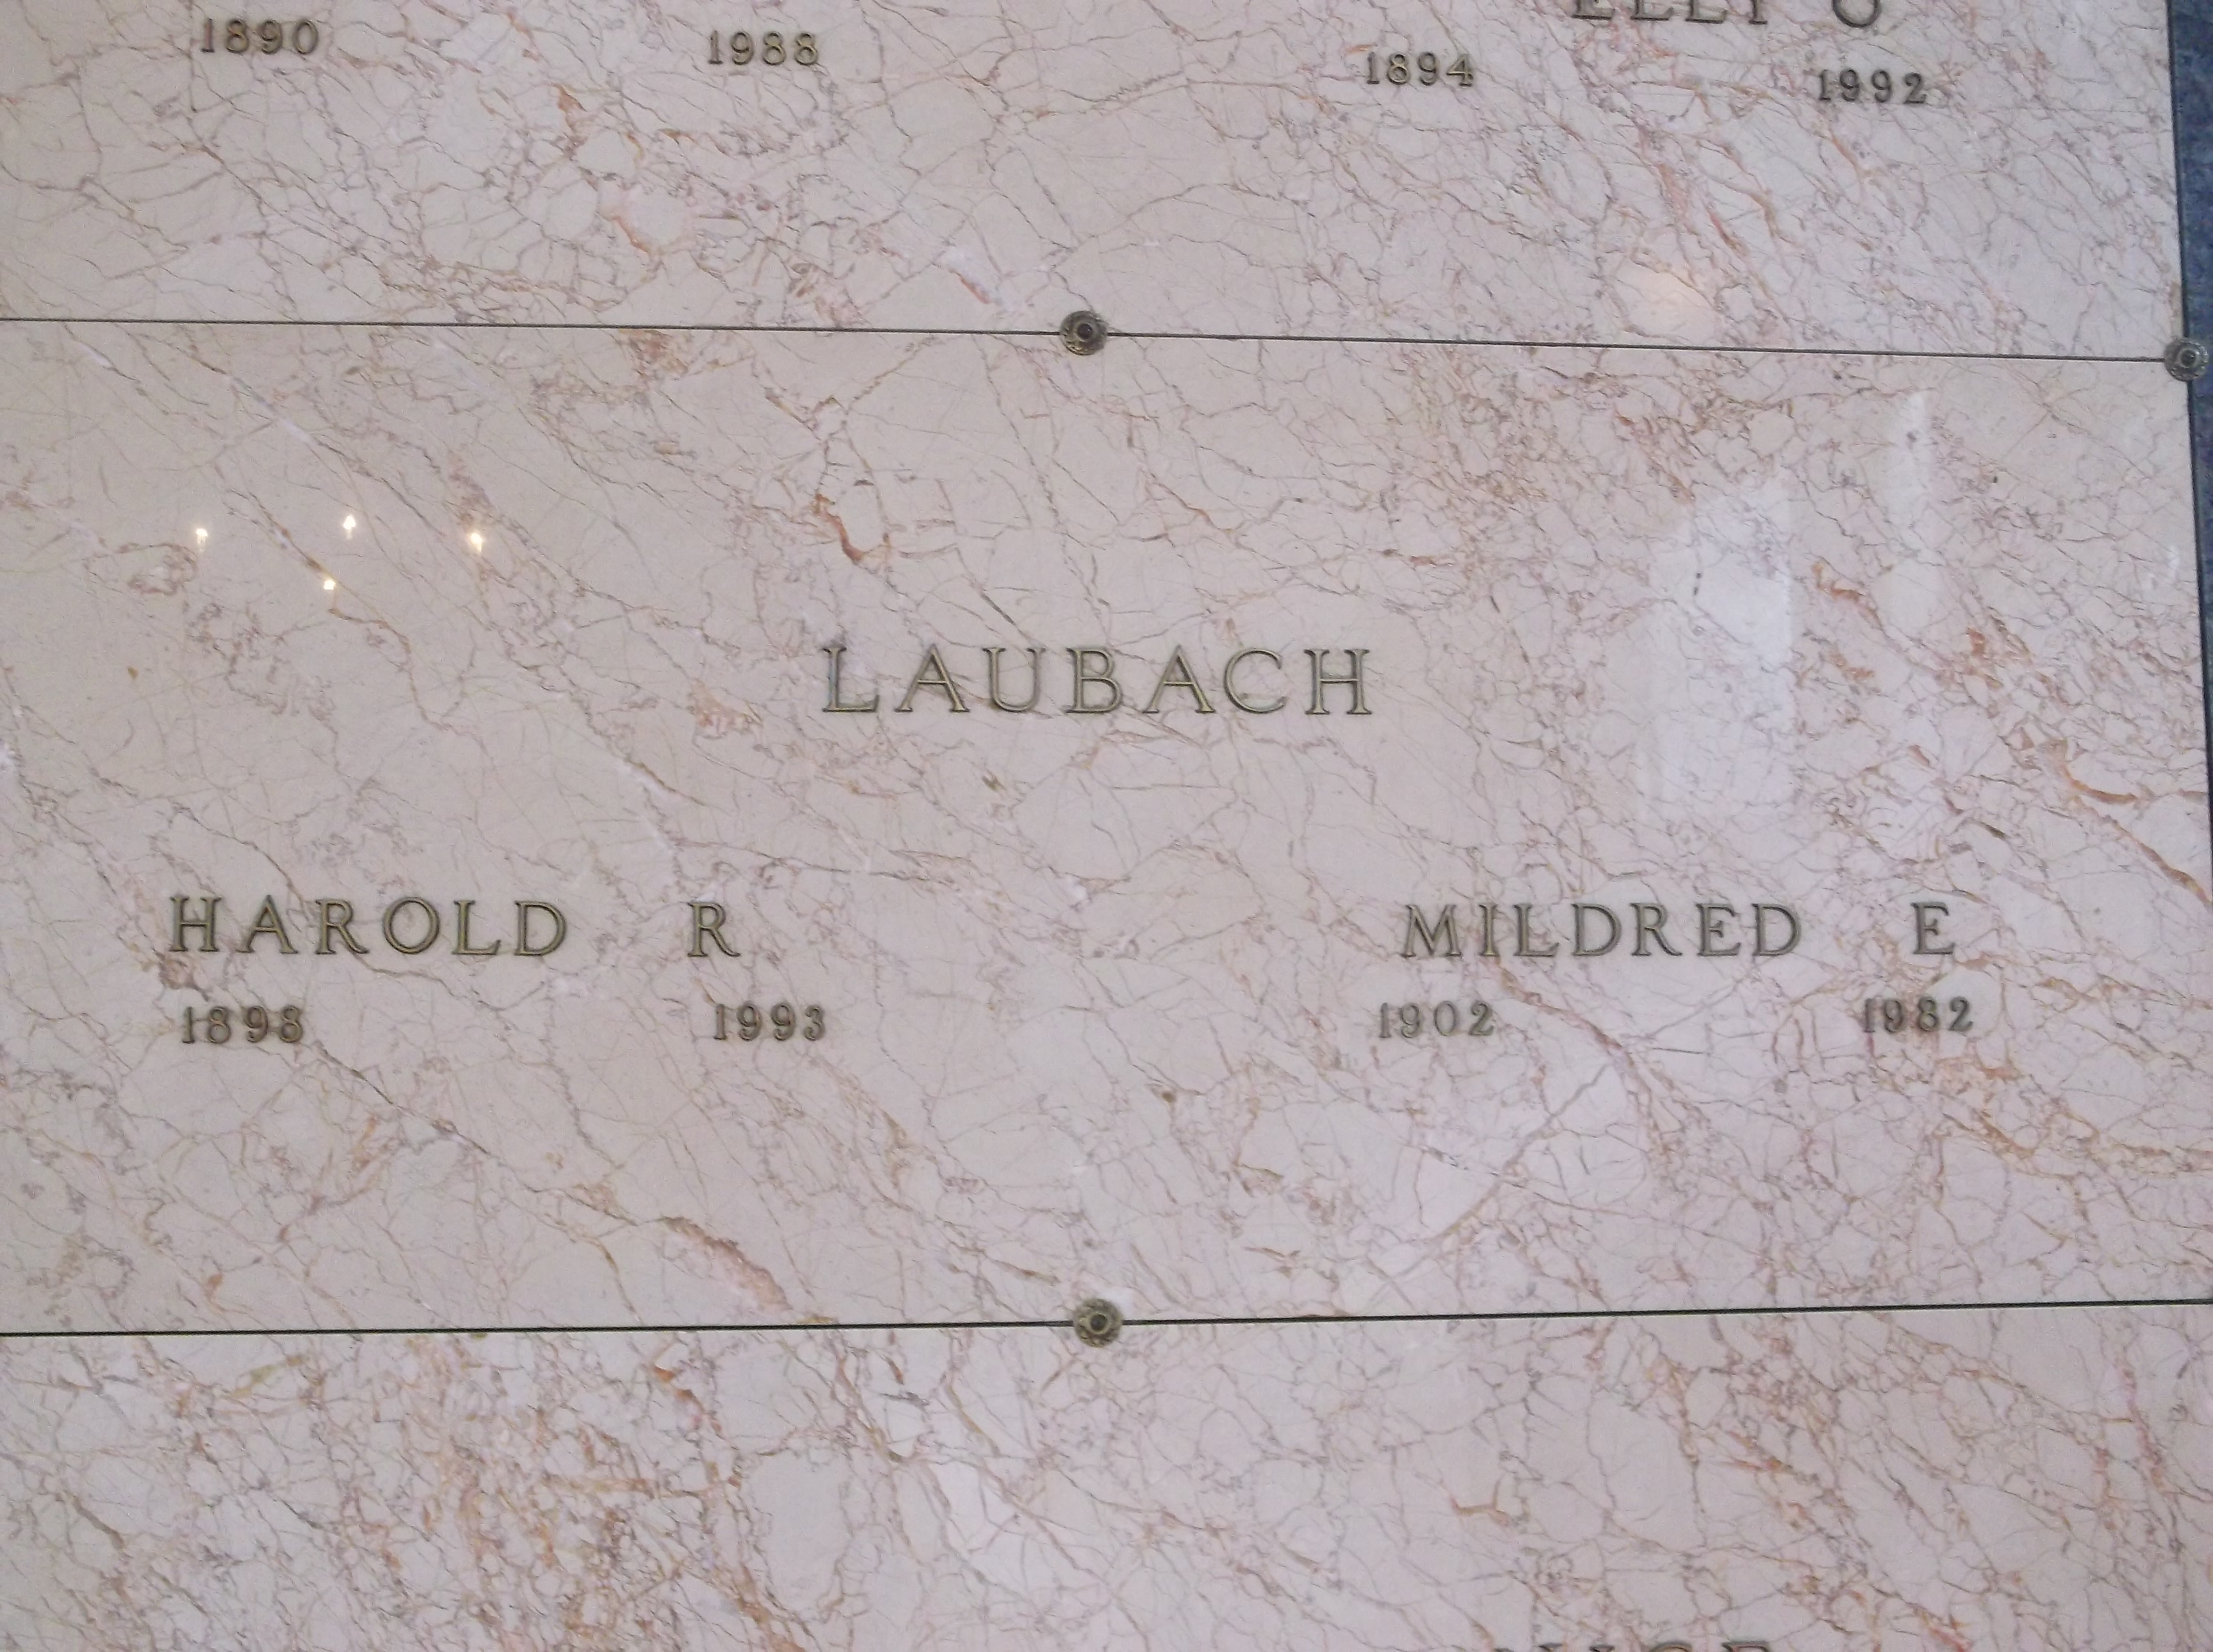 Harold R Laubach